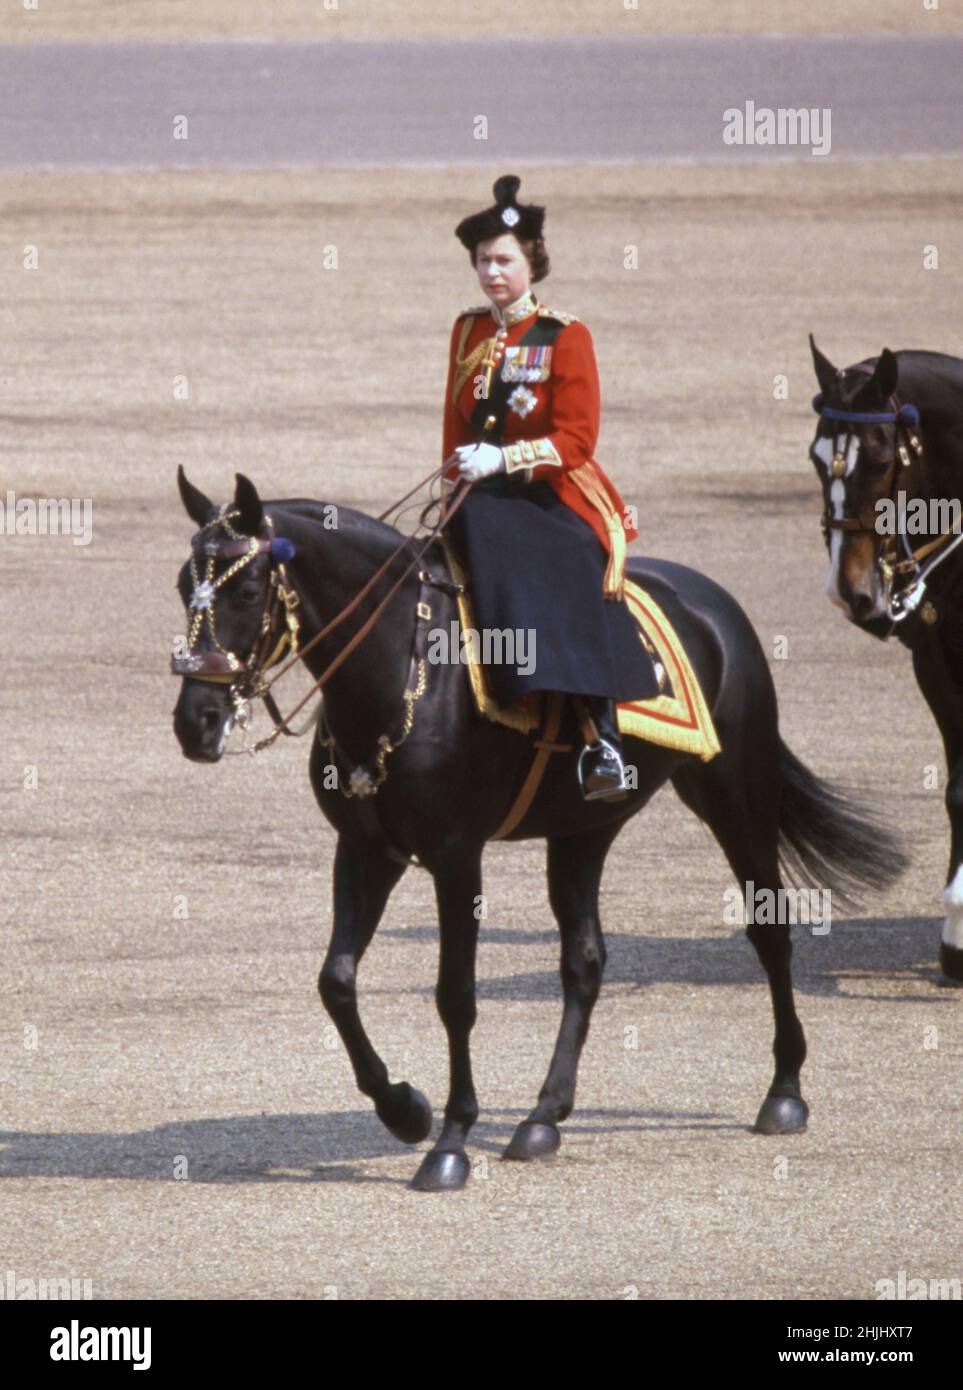 Foto del archivo fechada el 16/6/1969 de la reina Elizabeth II montando a sus guardias de caballo birmanos para inspeccionar el batallón 1st, Guardias escoceses, durante la ceremonia de Trooping the Color en Horse Parade para conmemorar el cumpleaños oficial de la reina. Más que cualquier otro interés, caballos y ponis han sido la pasión de la Reina a lo largo de su larga vida. Fecha de emisión: Domingo 30 de enero de 2022. Foto de stock